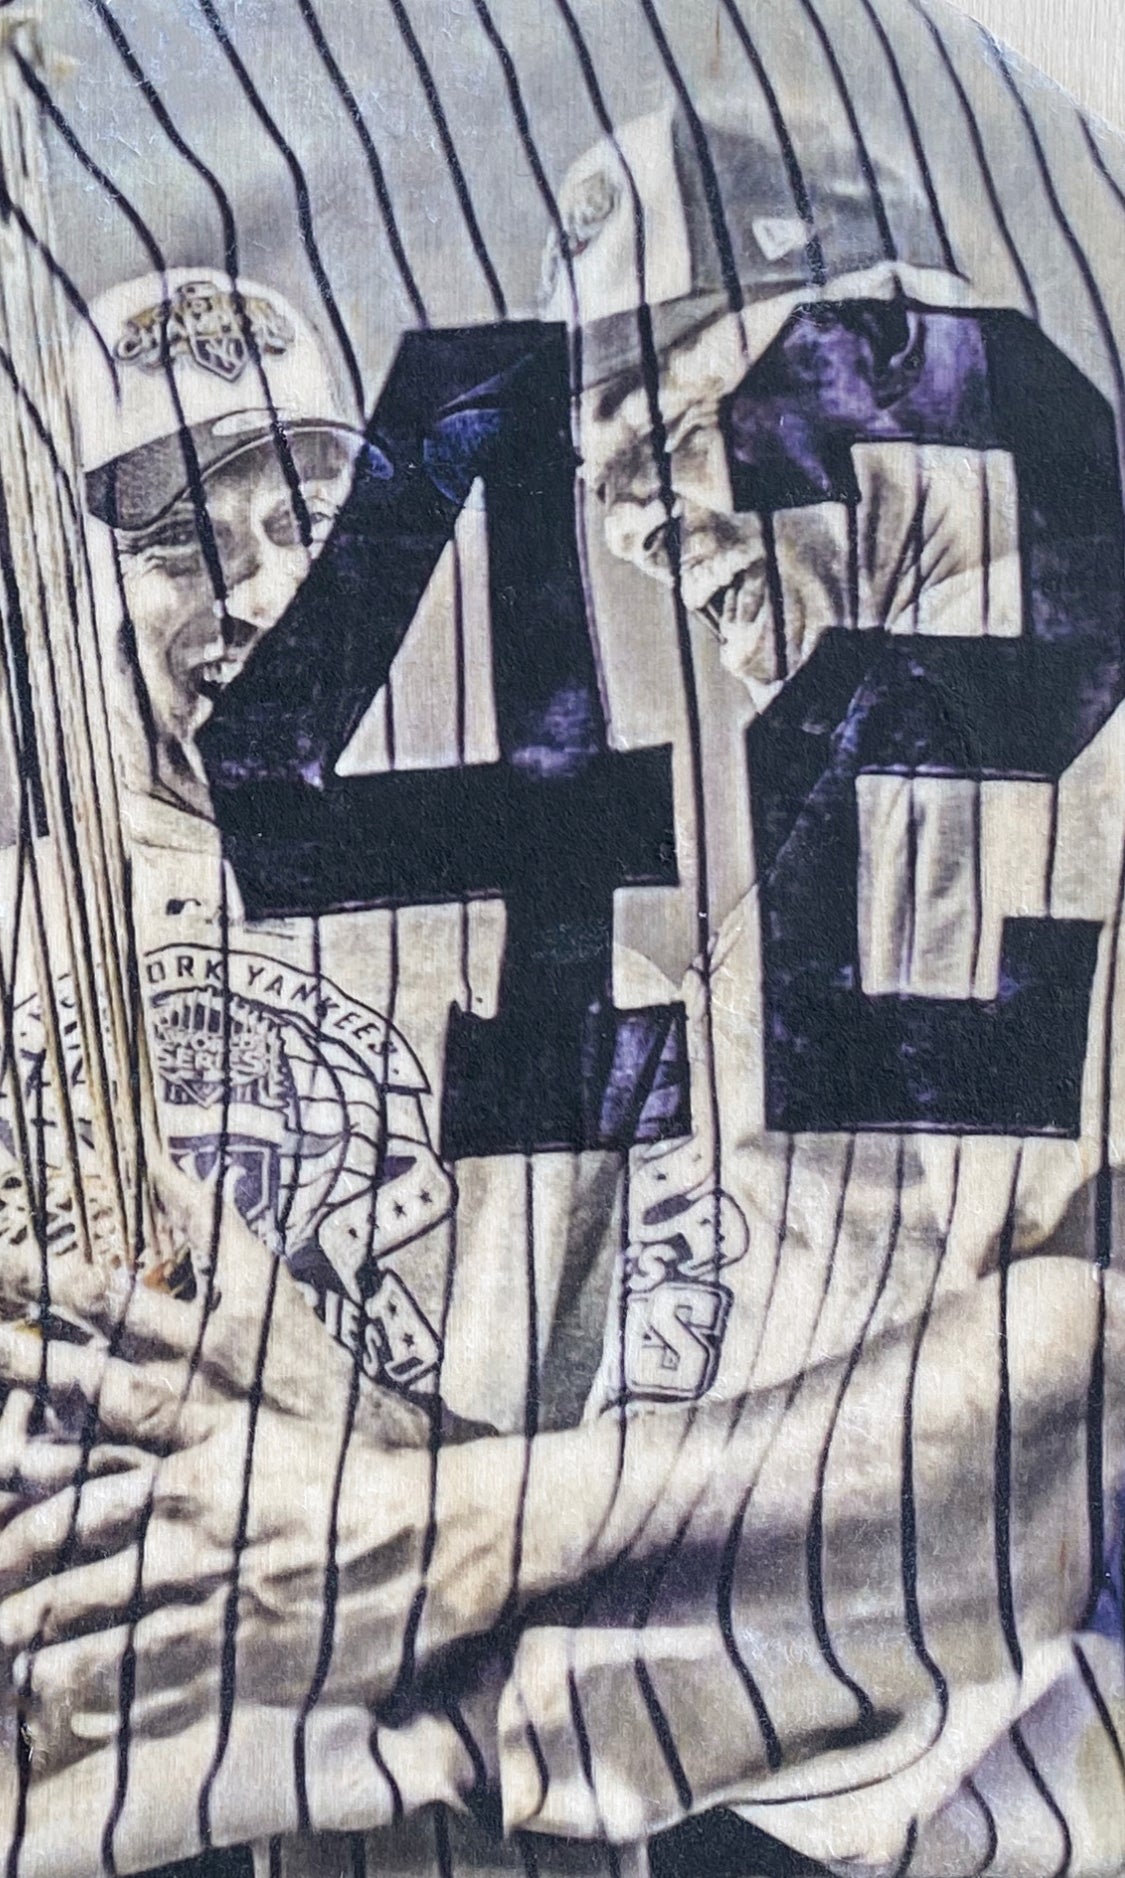 Mitchell & Ness Mariano Rivera New York Yankees White Authentic Jersey